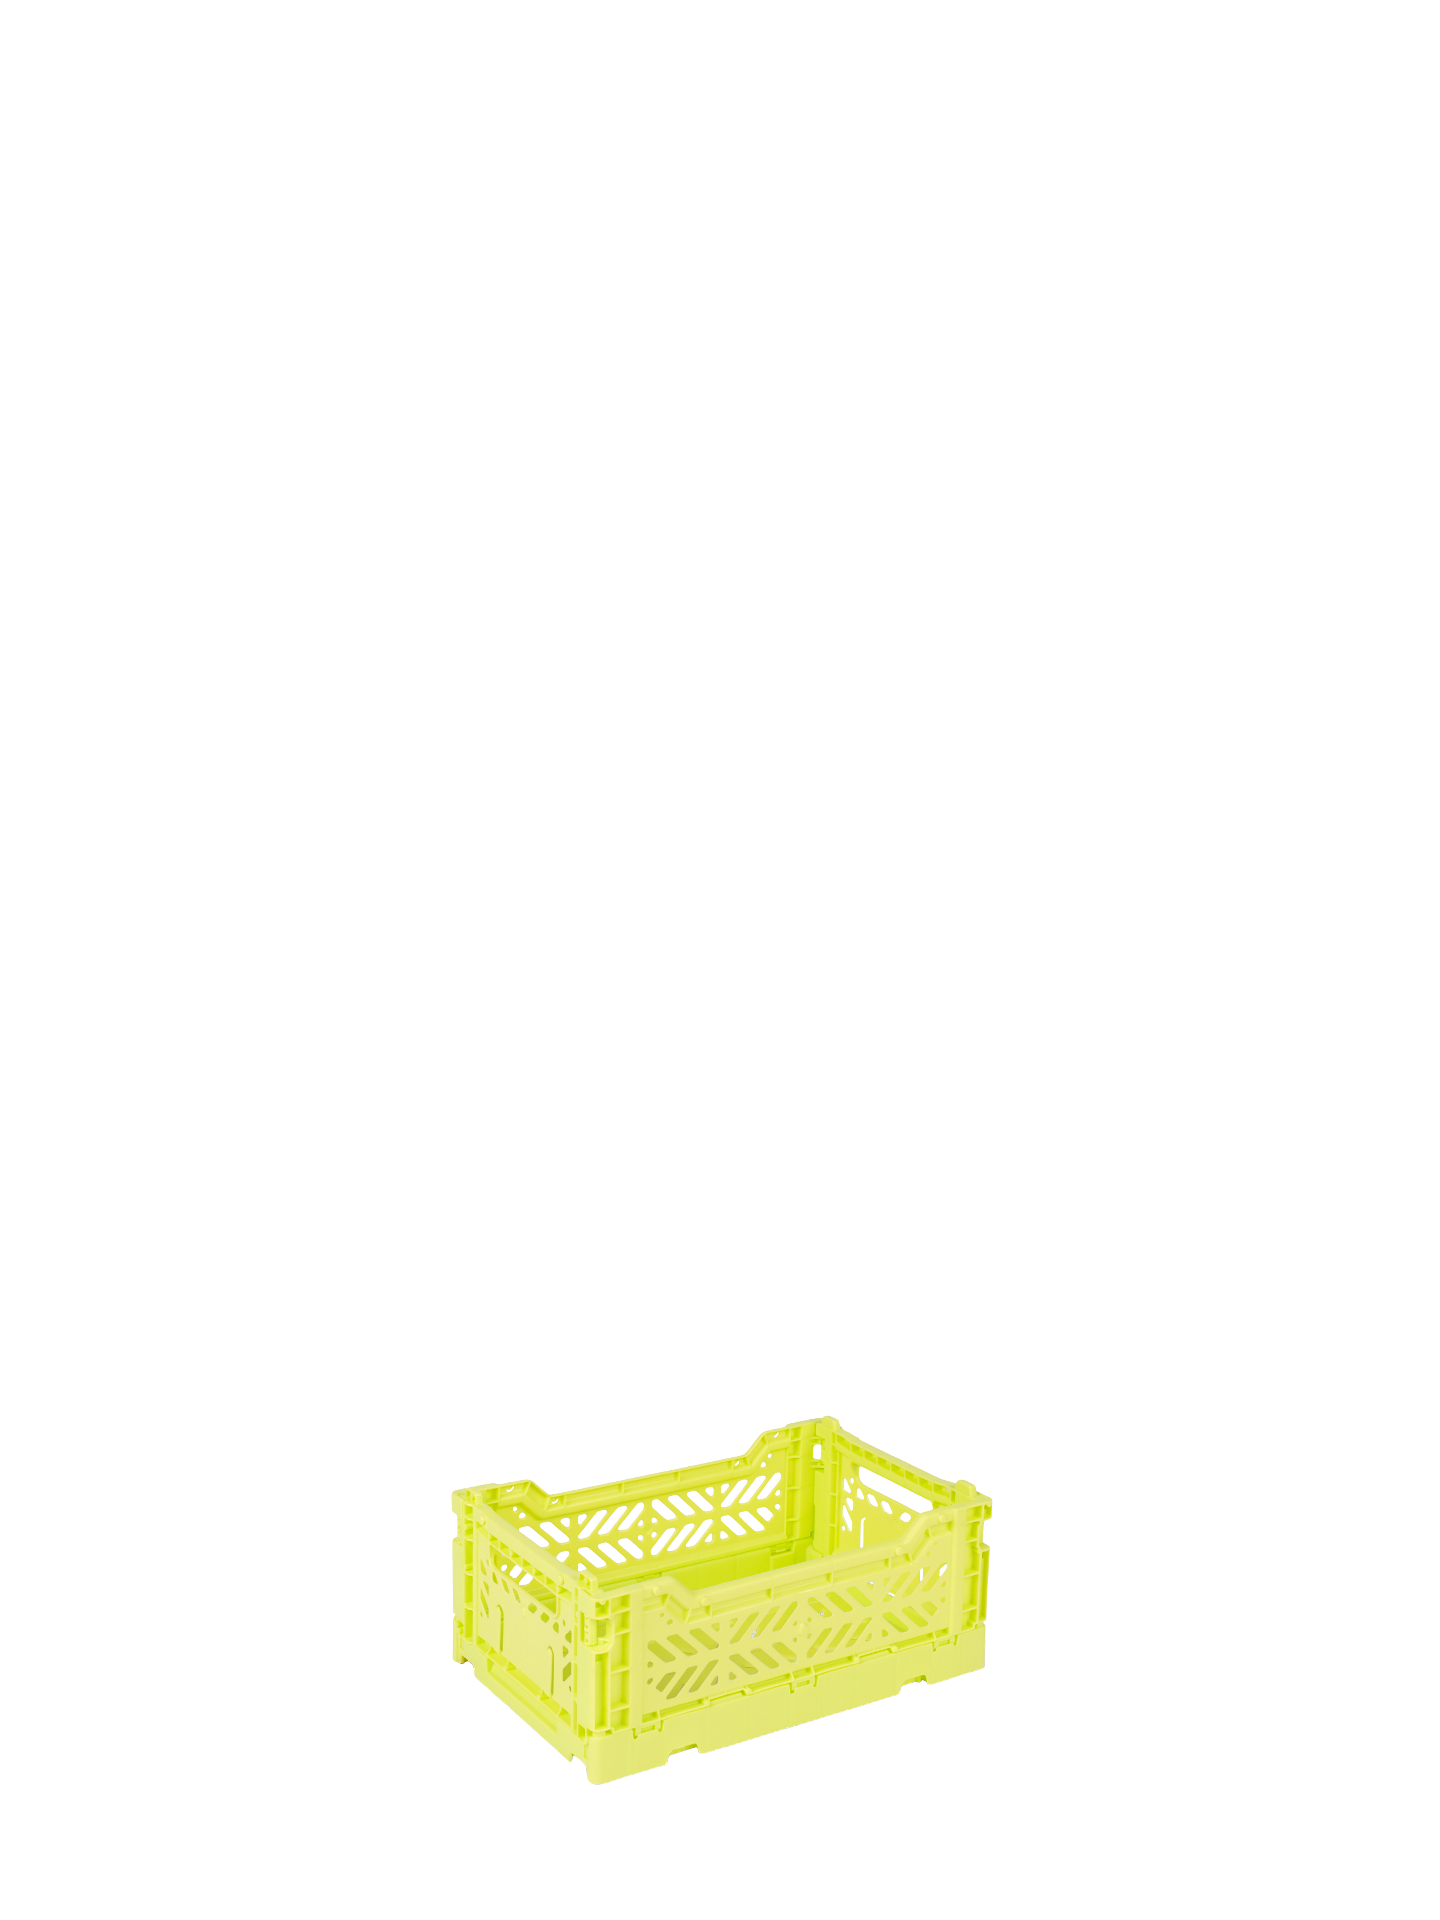 Mini size Aykasa folding crate in Acid yellow is bright greenish yellow or yellow-y green